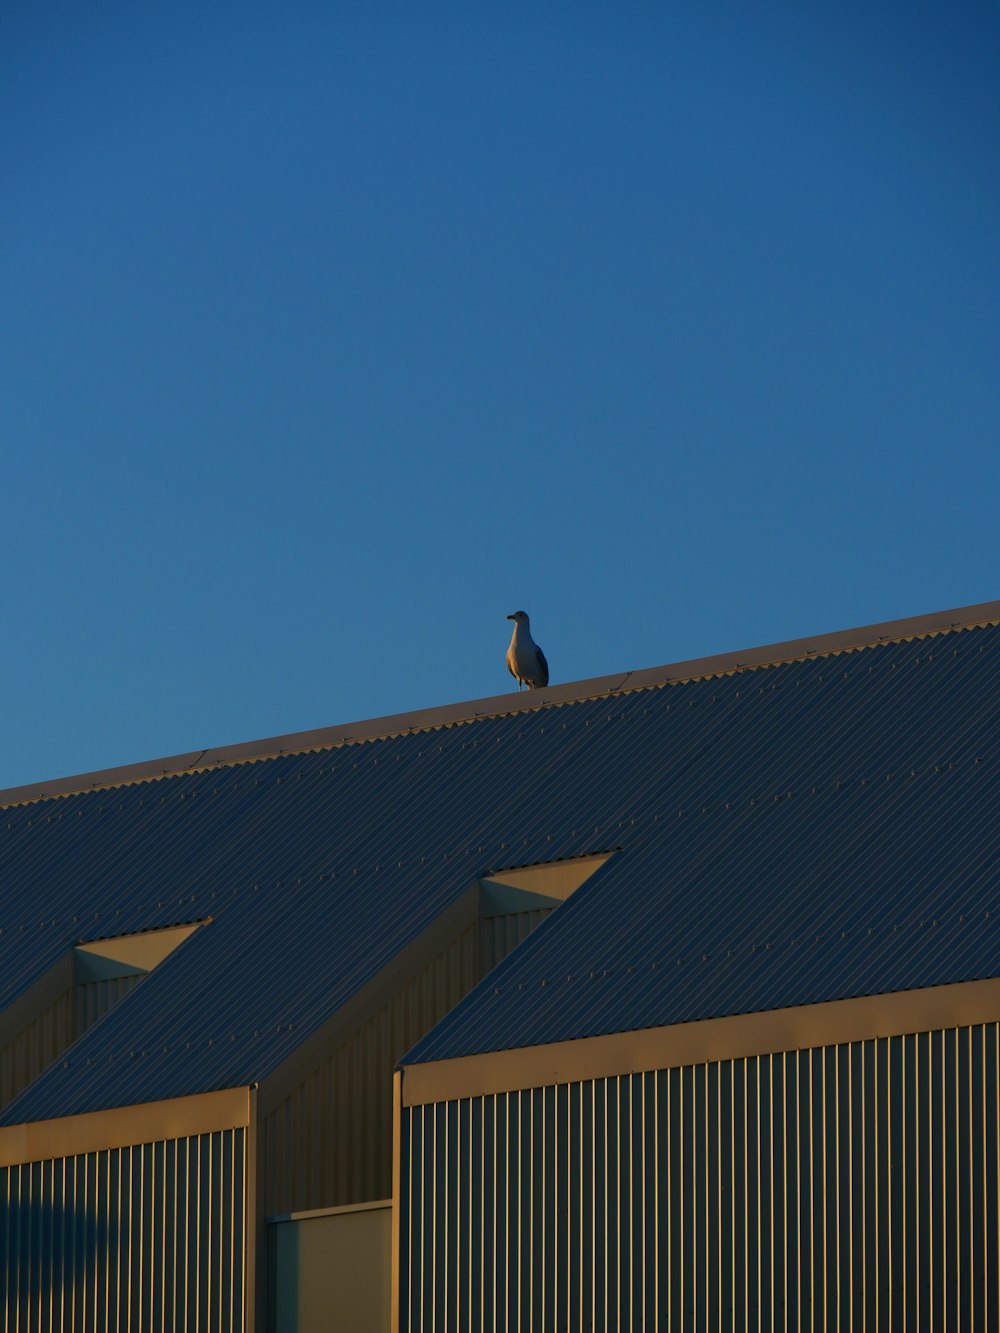 갈색 건물 위에 검은 새